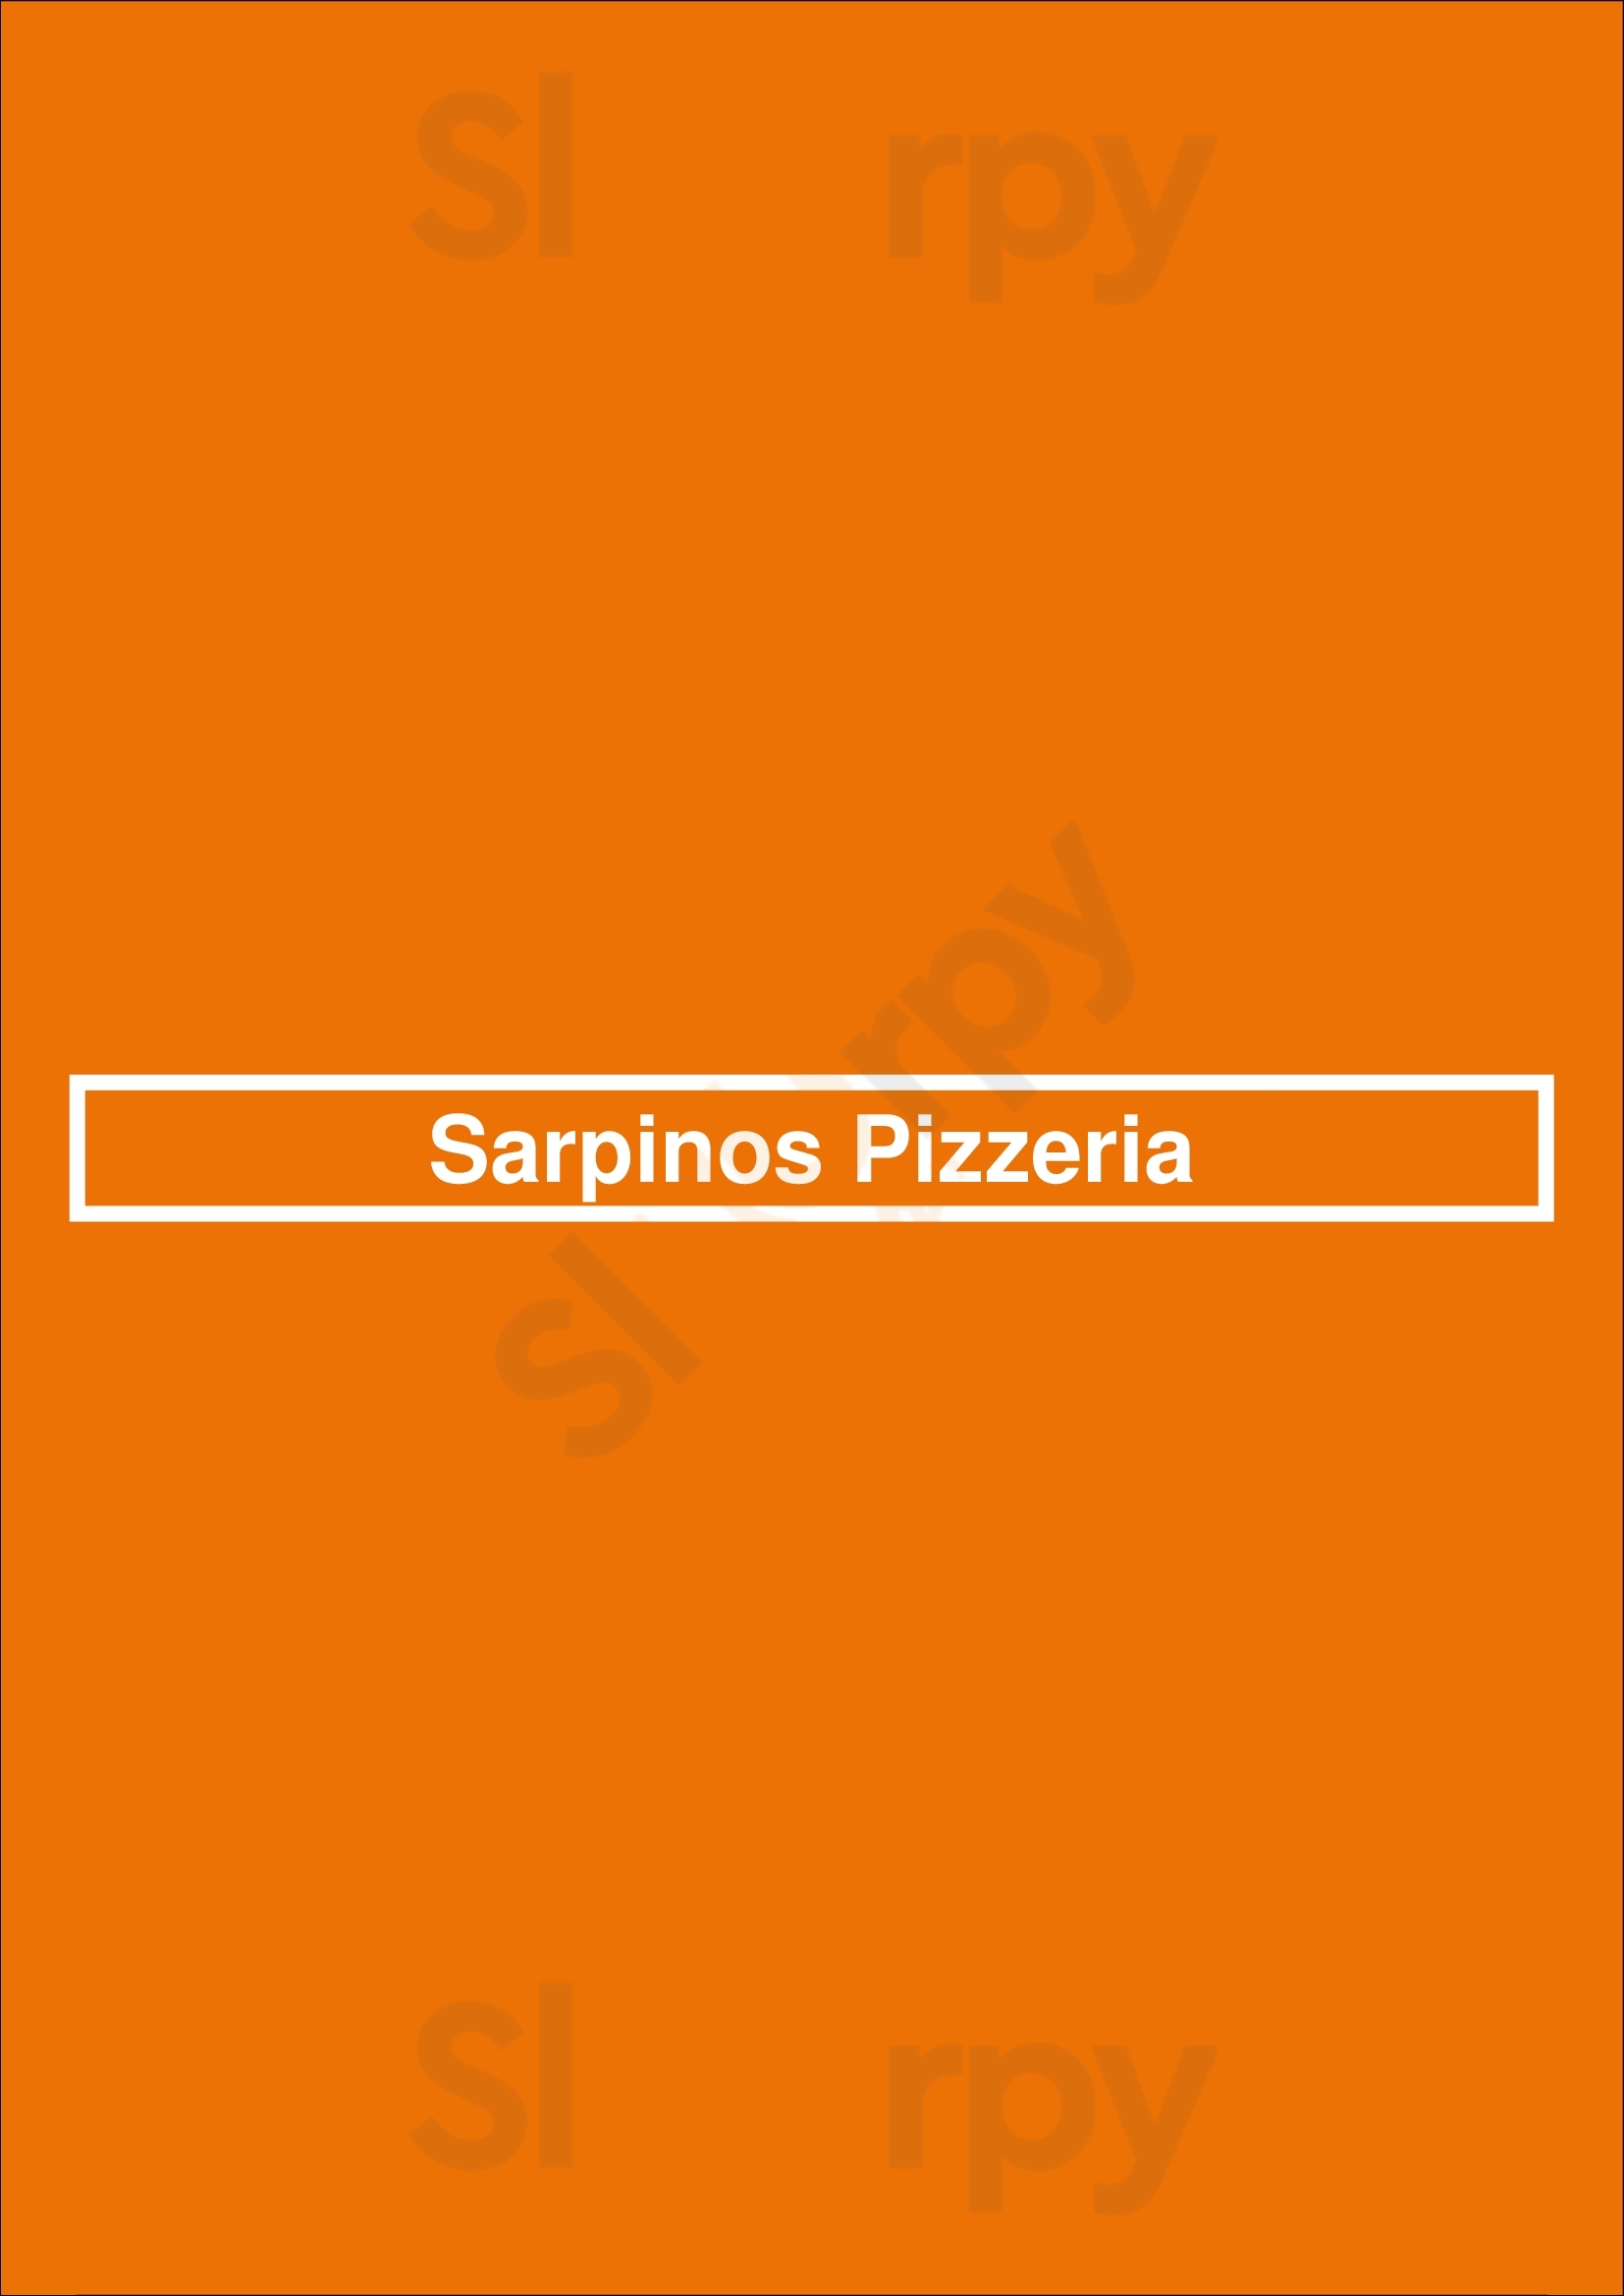 Sarpino's Pizzeria Chicago Menu - 1